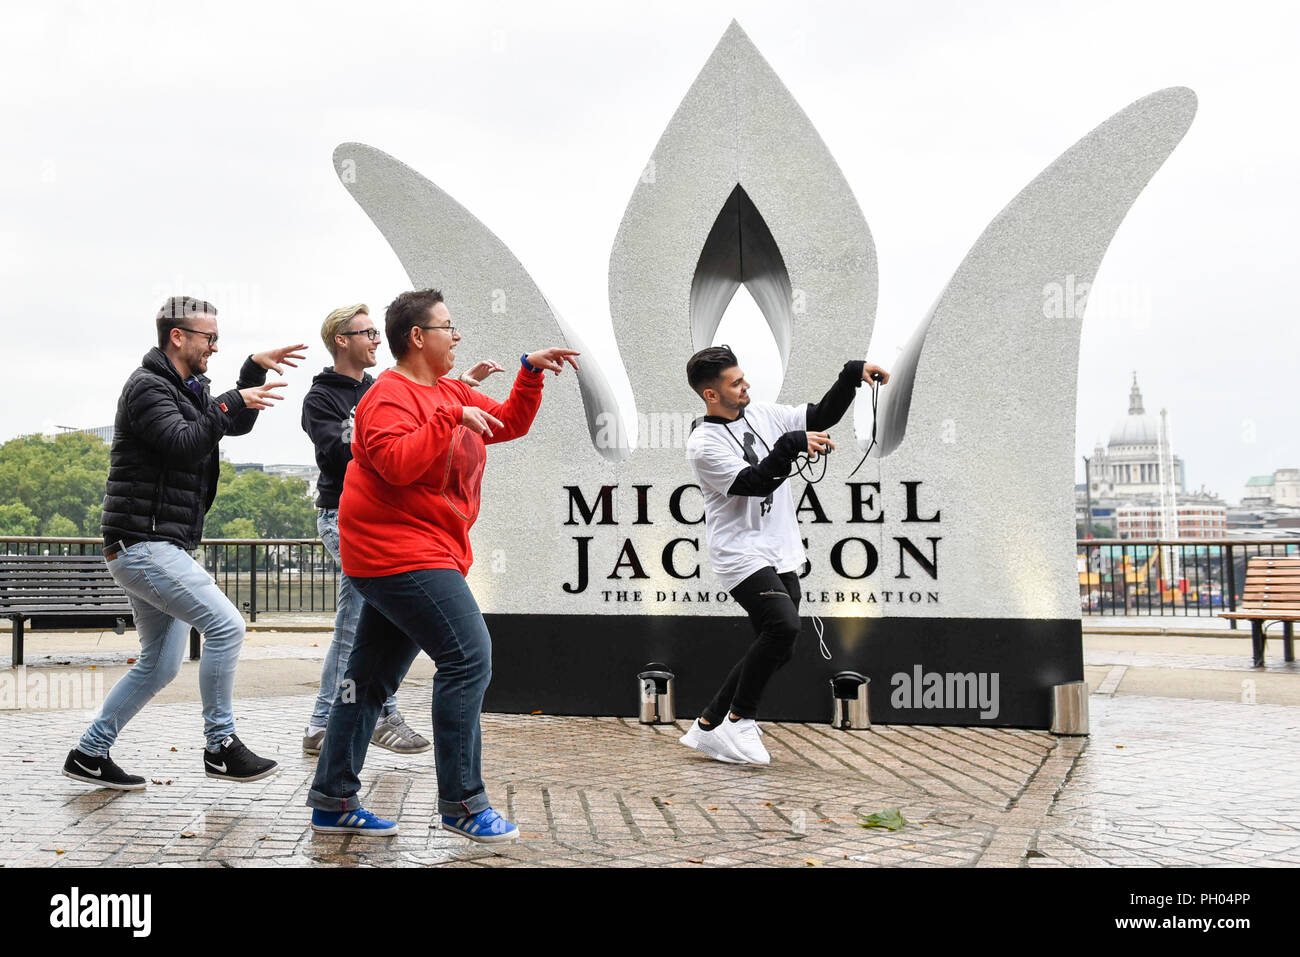 Londres, Royaume-Uni. 29 août 2018. Michael Jackson fans de danse 'Thriller' à côté d'un 13 pieds de géant a dévoilé la couronne ornée sur la rive sud, sur ce qu'aurait été l'anniversaire de Michael Jackson. Sony Music, en collaboration avec la succession de Michael Jackson, dévoilée l'installation pour célébrer le roi de Pop's Diamond anniversaire. Crédit : Stephen Chung / Alamy Live News Banque D'Images